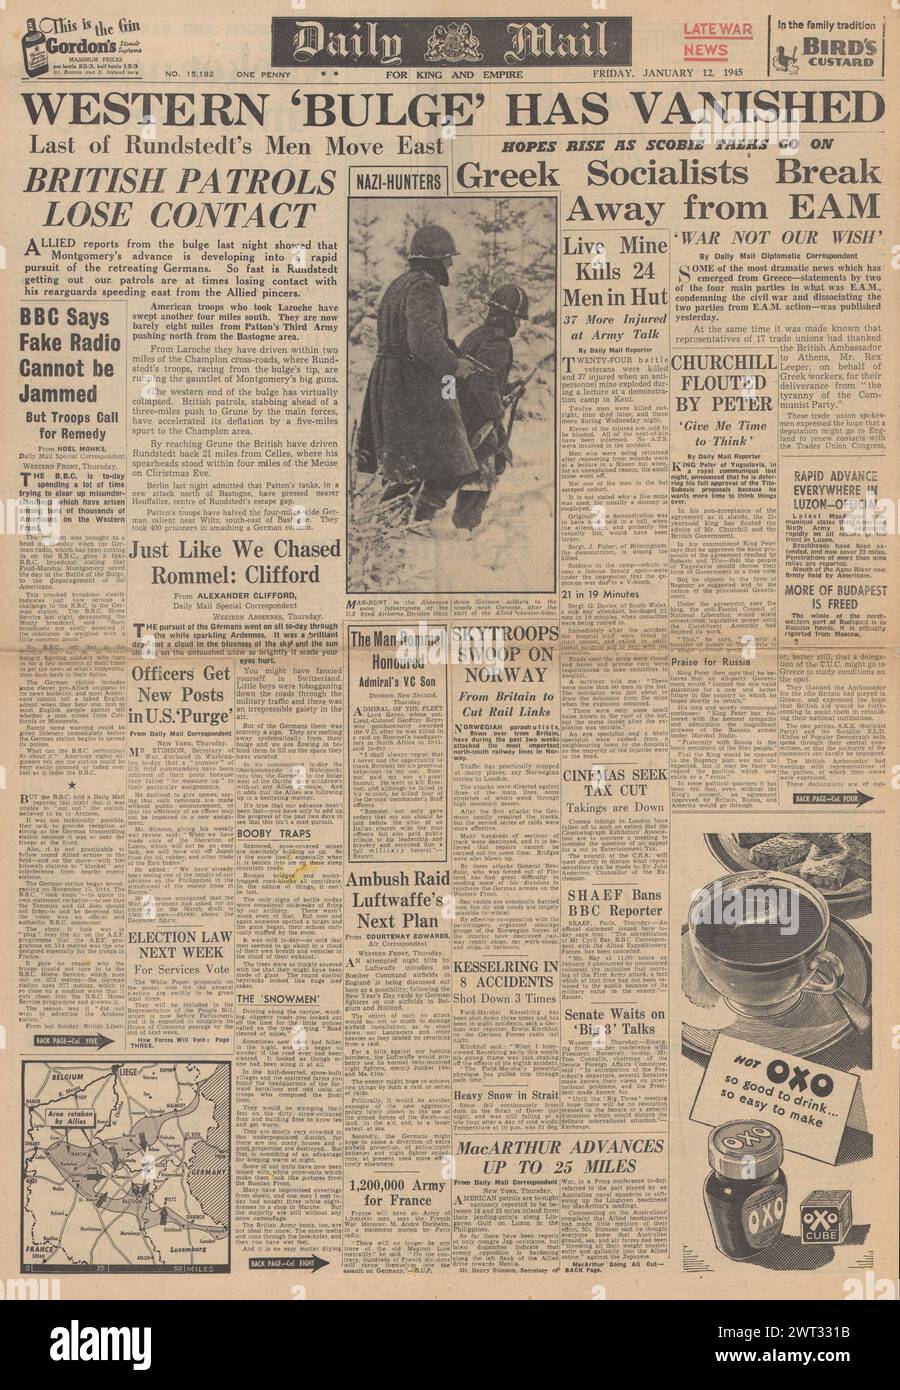 1945 la prima pagina del Daily mail riporta la Battaglia delle Ardenne, le forze statunitensi avanzano su Manila e combattono per Budapest Foto Stock